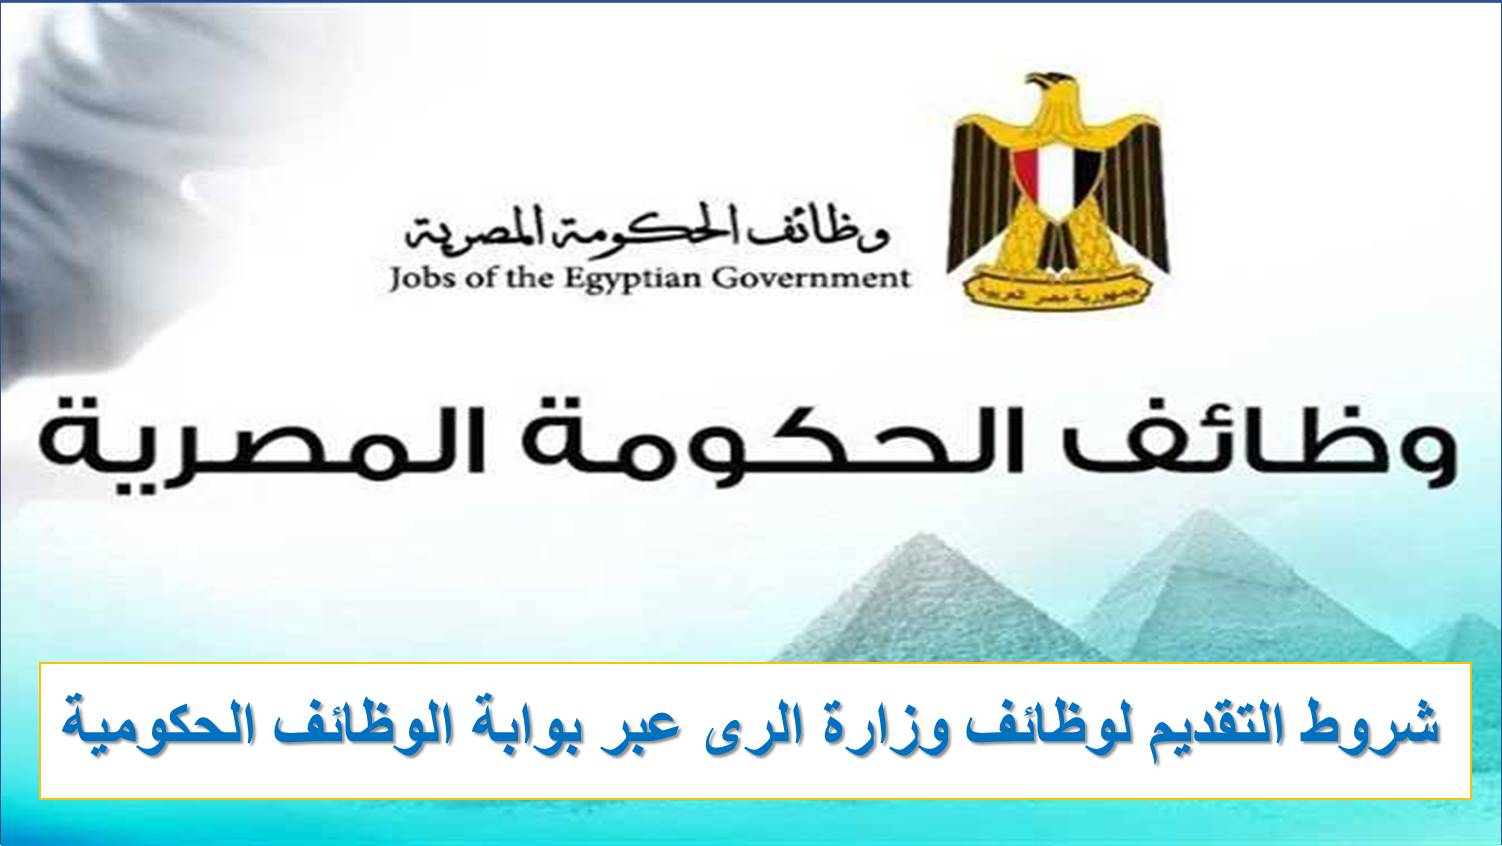 الان خطوات وشروط التقديم لوظائف وزارة الرى عبر بوابة الوظائف الحكومية